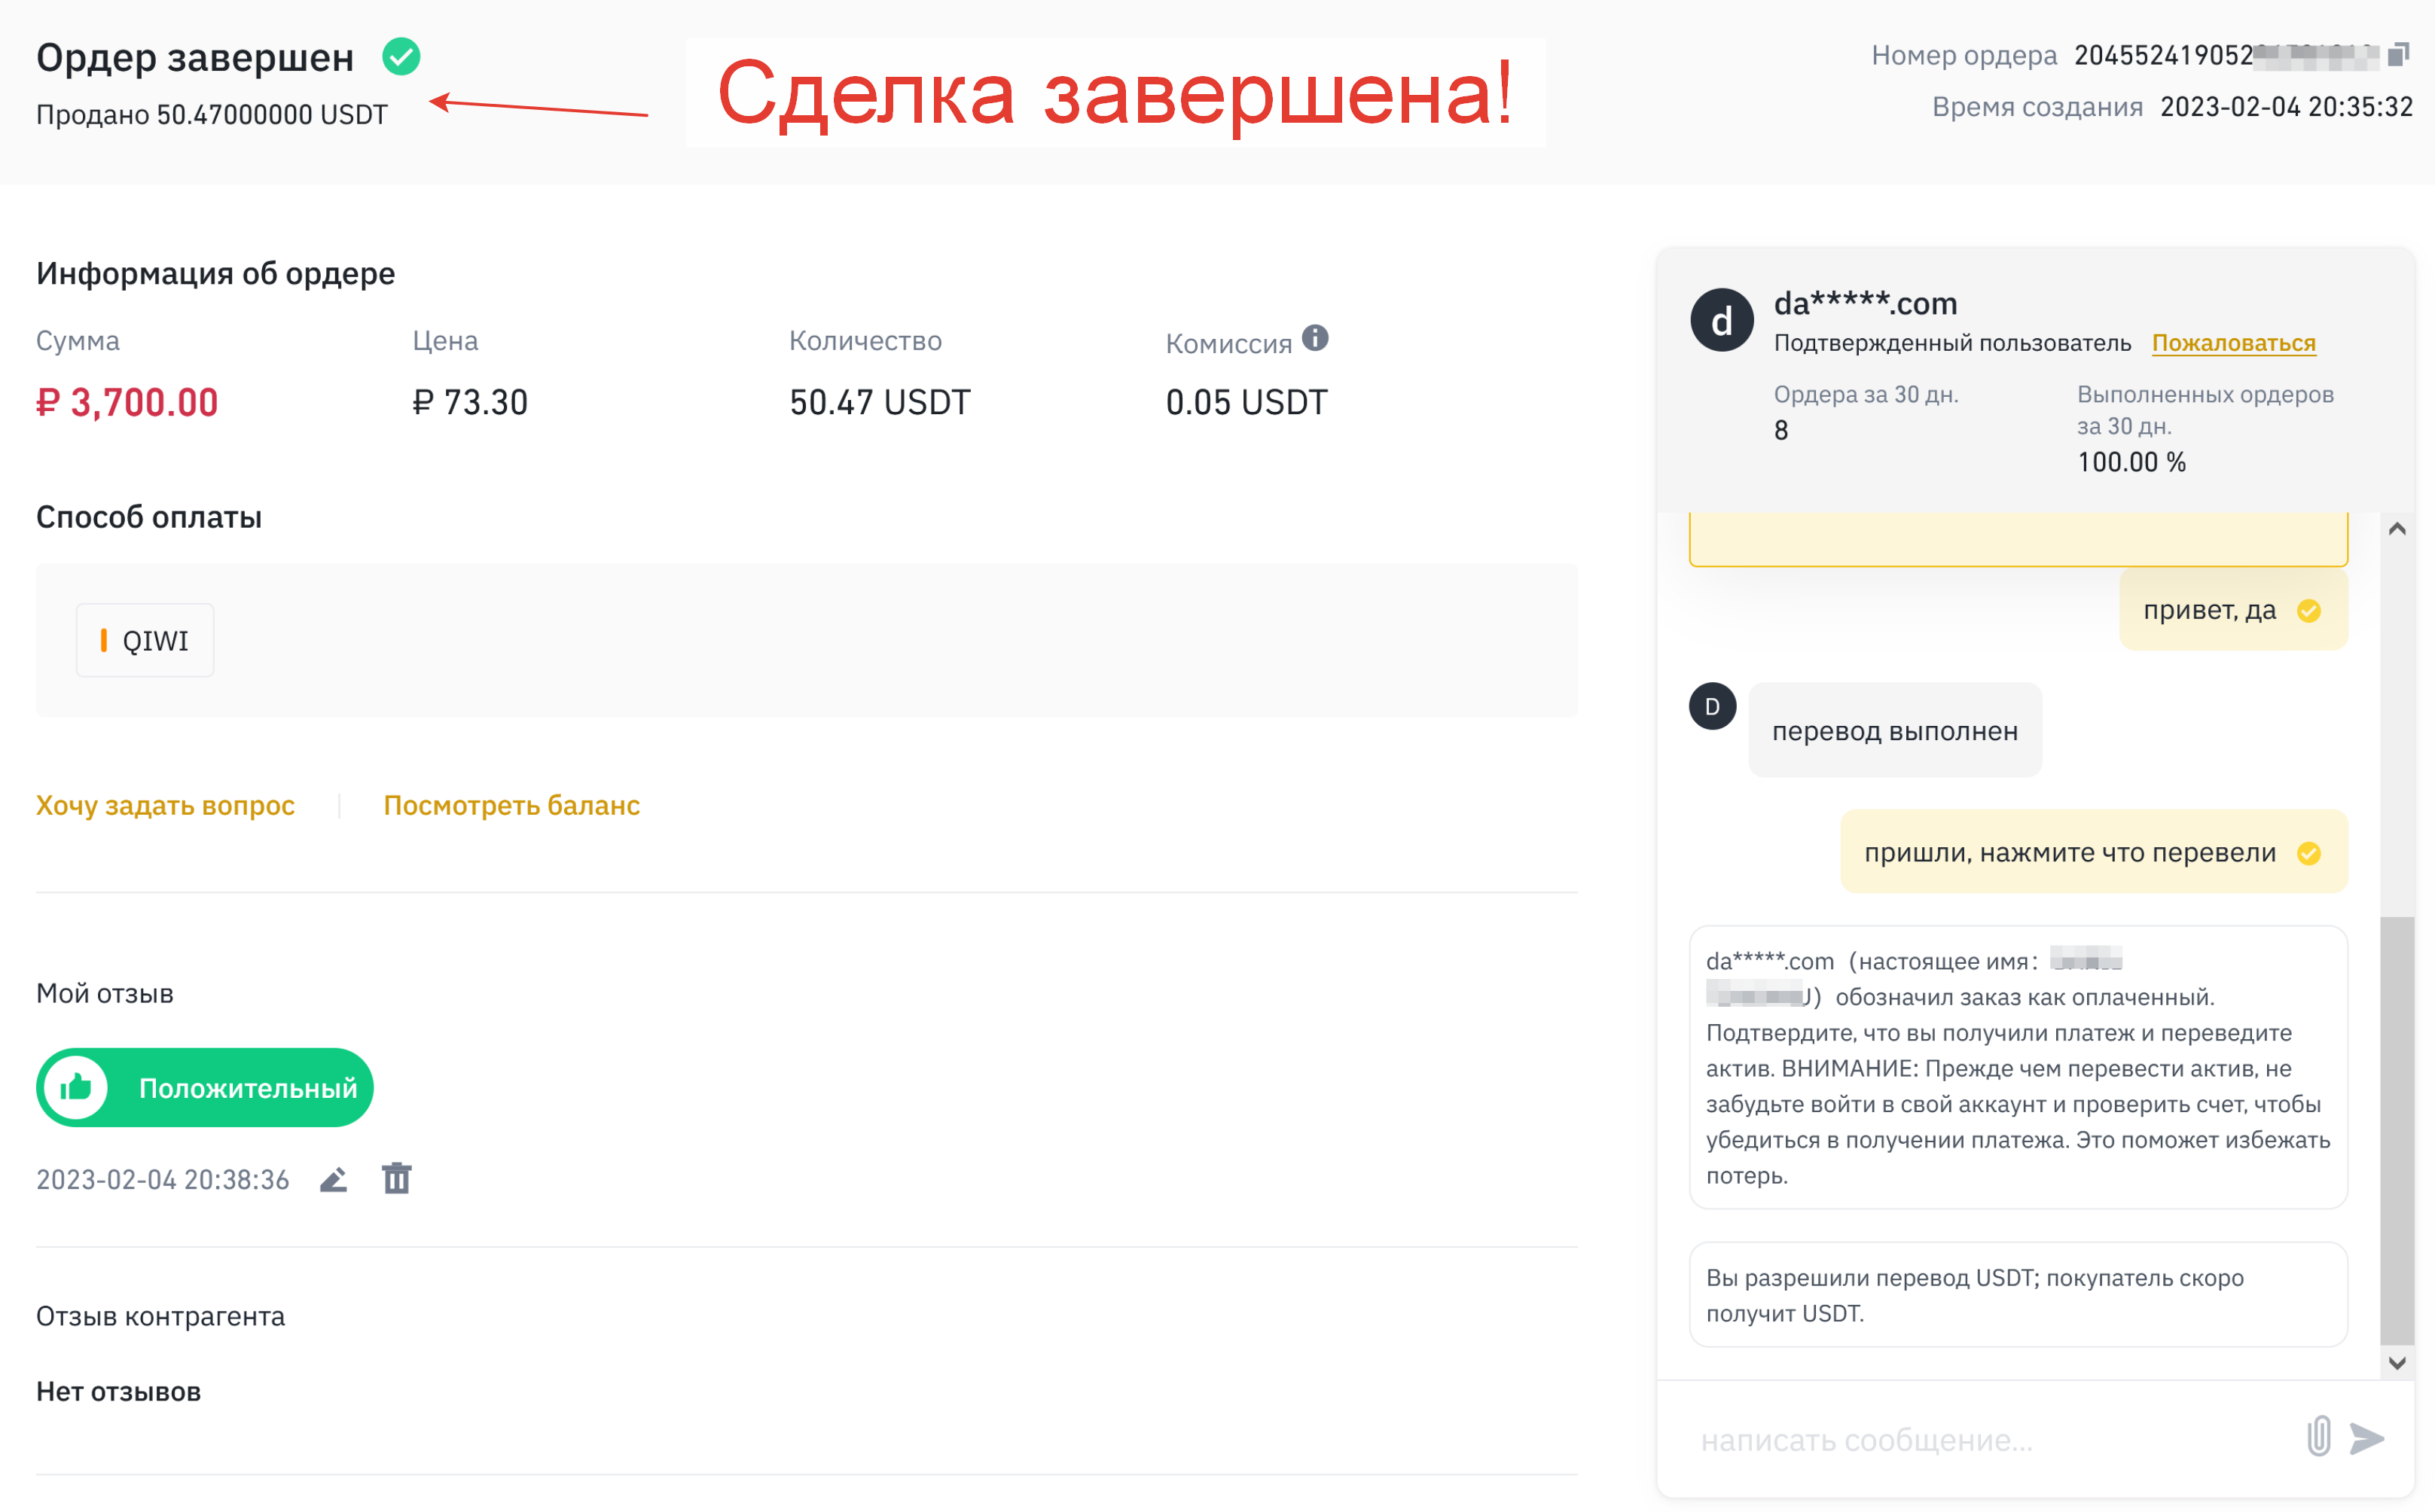 Сделка по продаже USDT за рубли на Binance P2P успешно завершена